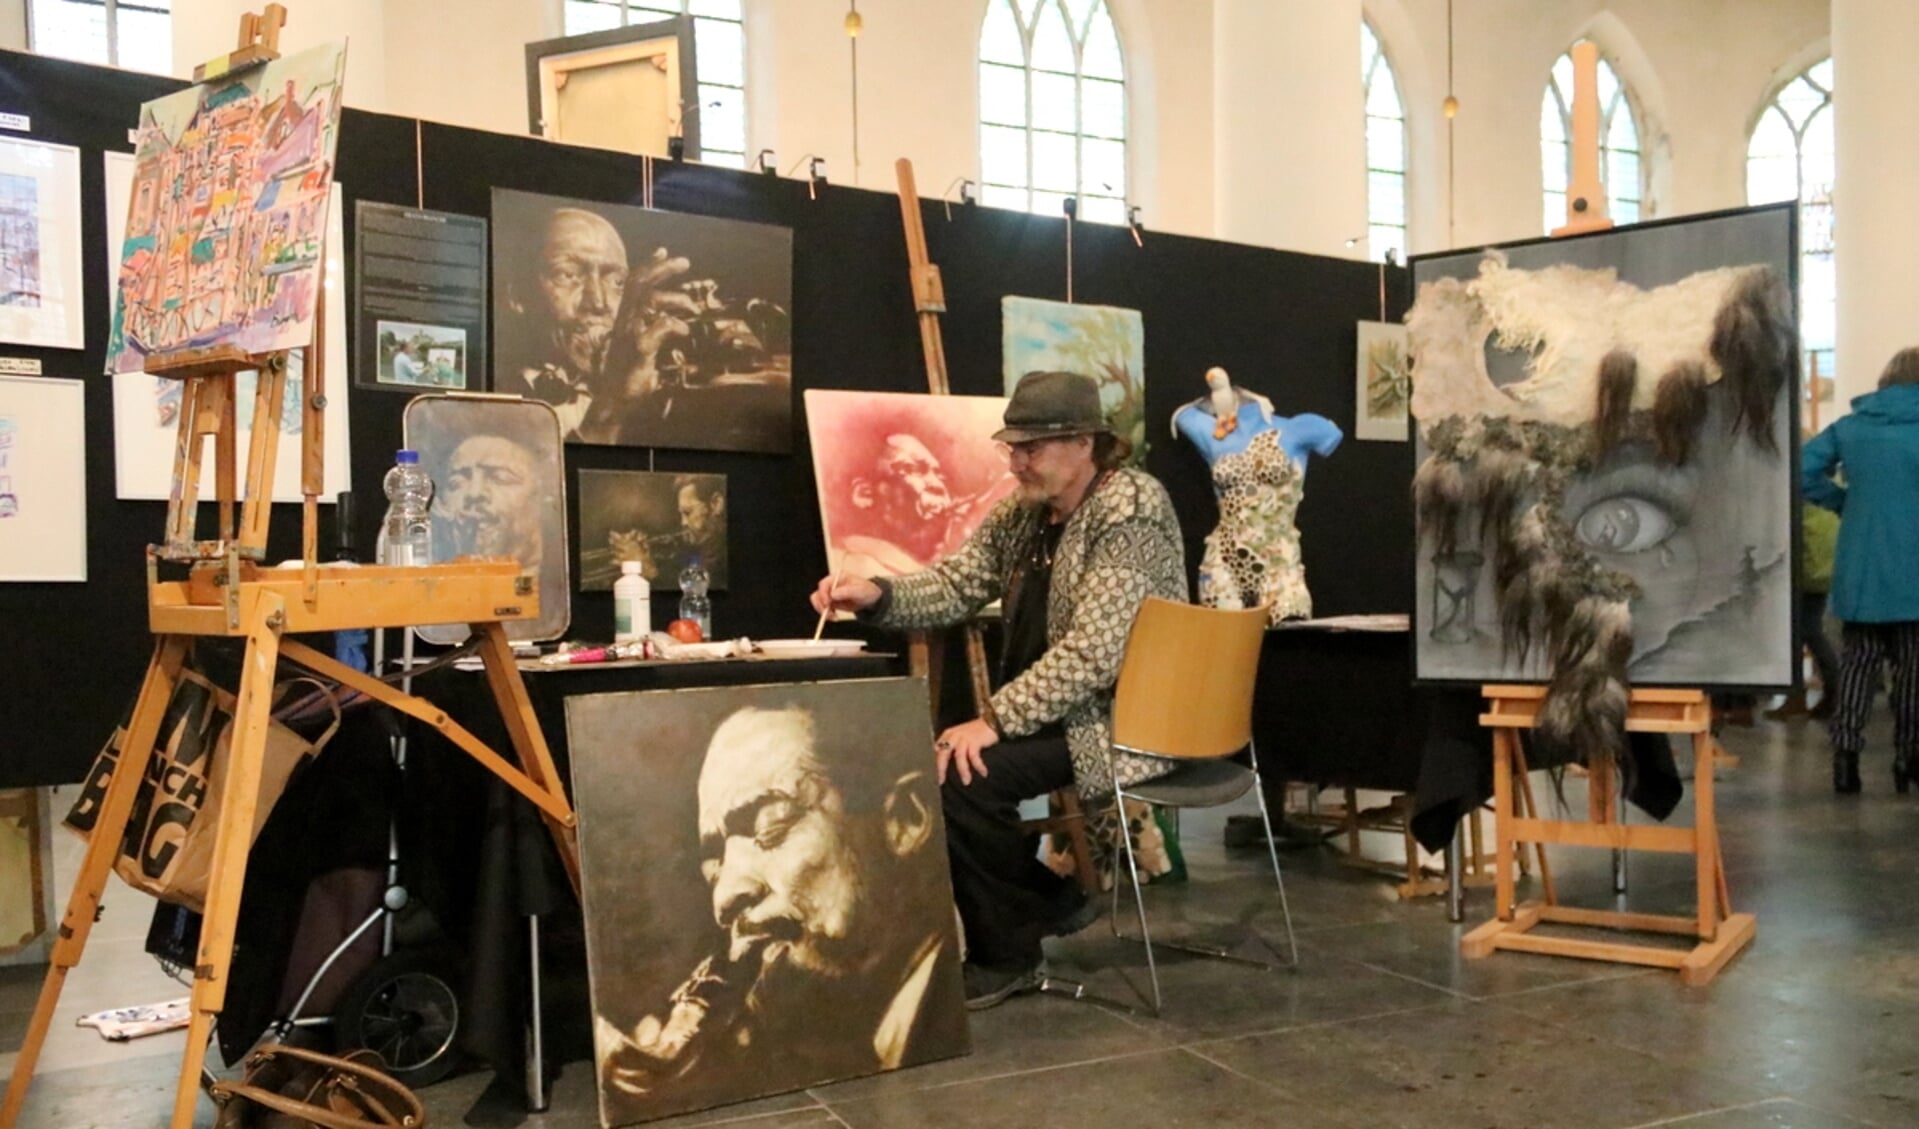 Kunstenaar Albert de Bruin aan het werk op de eerste Kunst in de Kerk van vorig jaar. Dit jaar maakt dit evenement samen met het festival Onder de Linden een forse herstart.